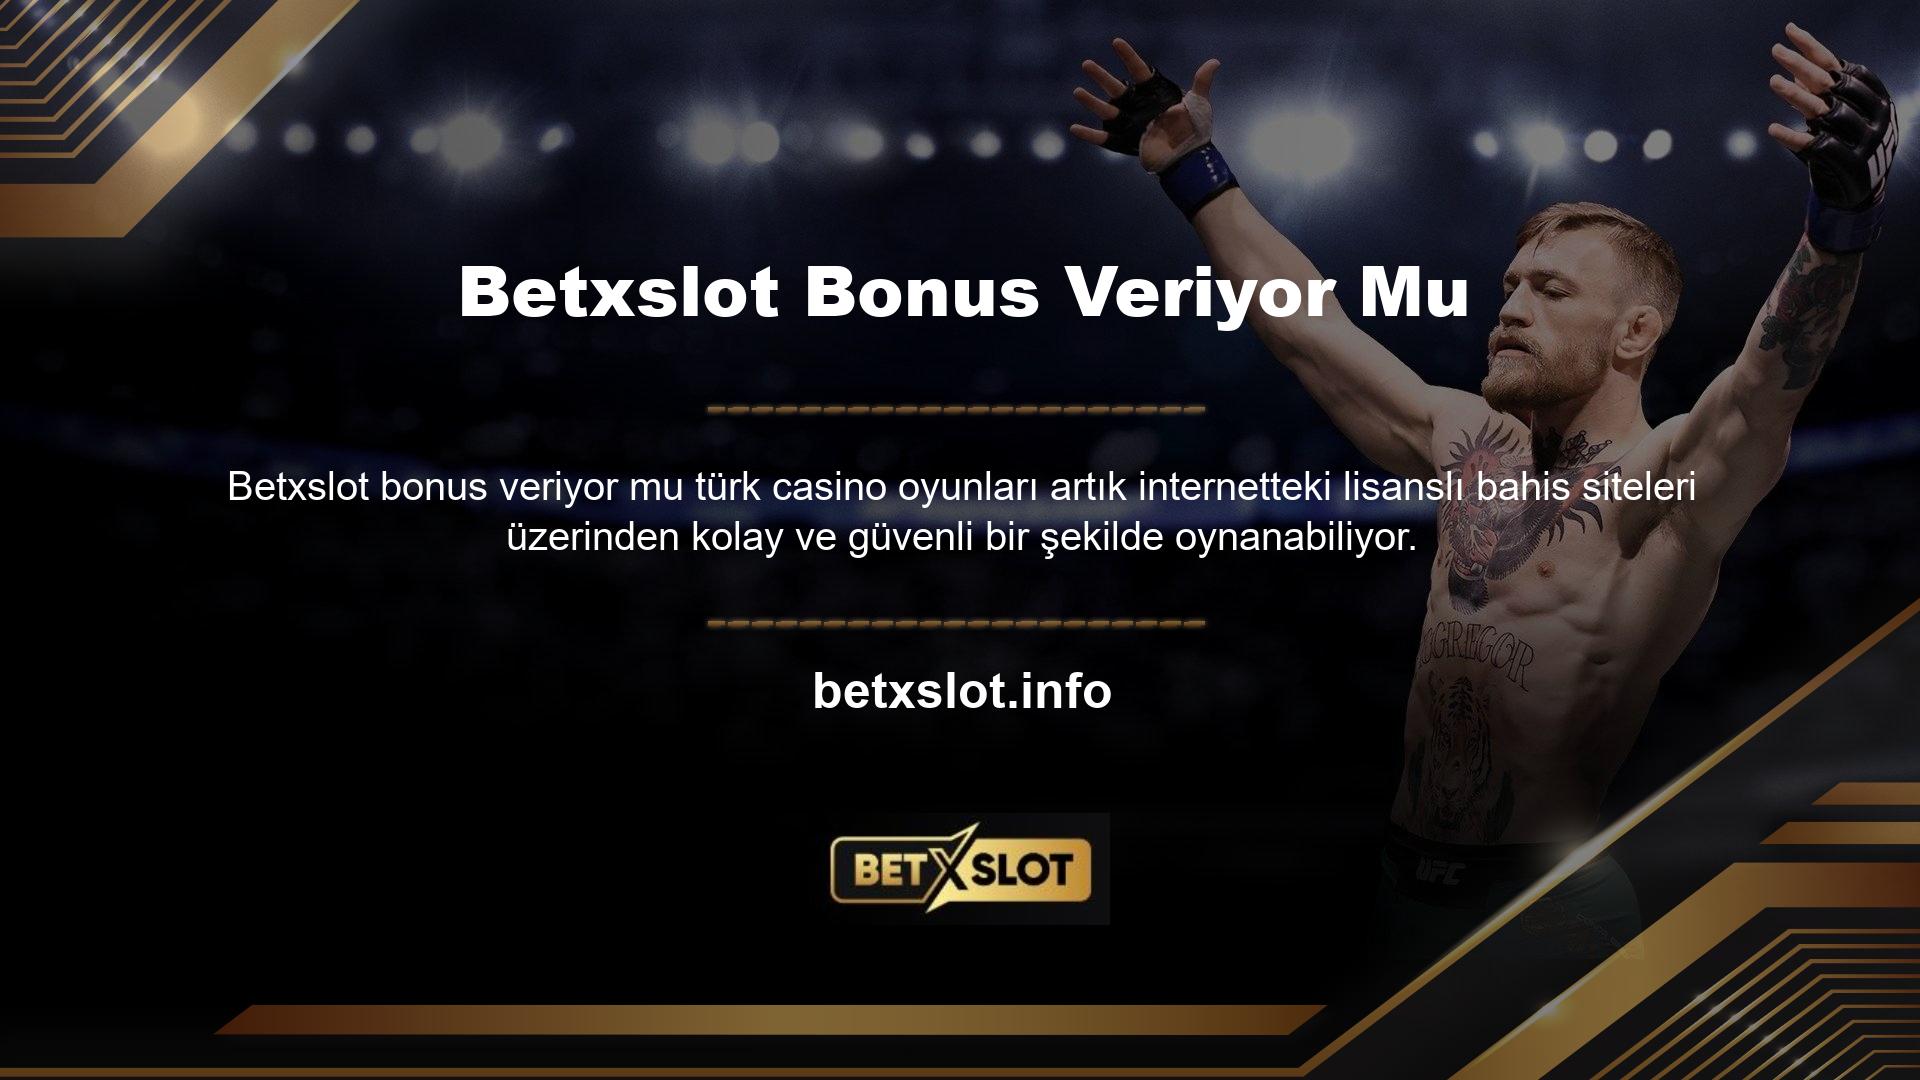 Betxslot, oyunculara bonuslar açısından sınırsız avantajlar sunmaktadır